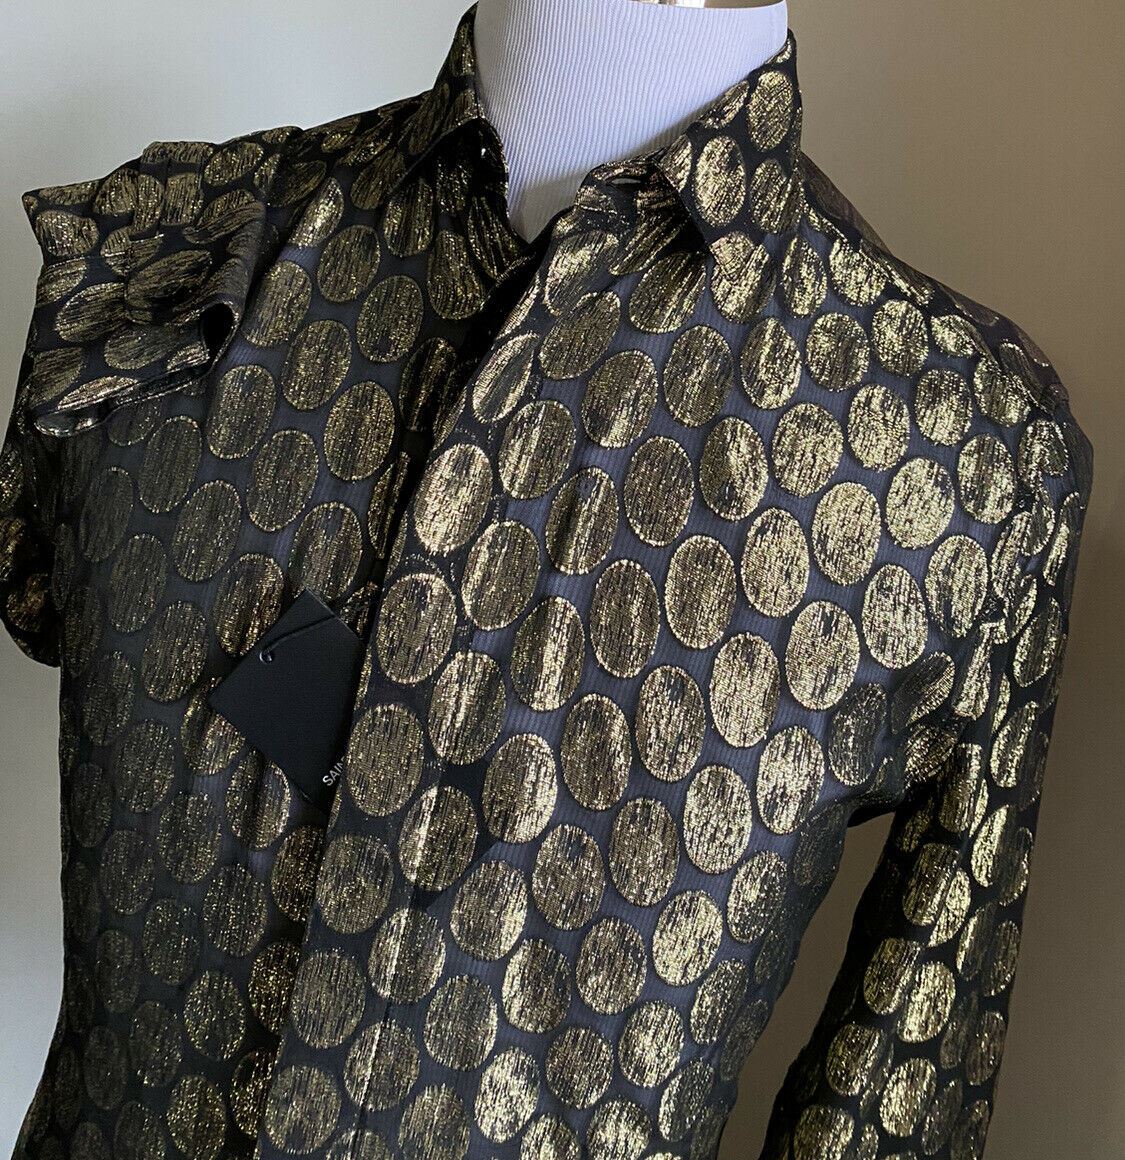 NWT $1490 Мужская шелковая классическая рубашка Saint Laurent черная/золотая M (38/15) Италия